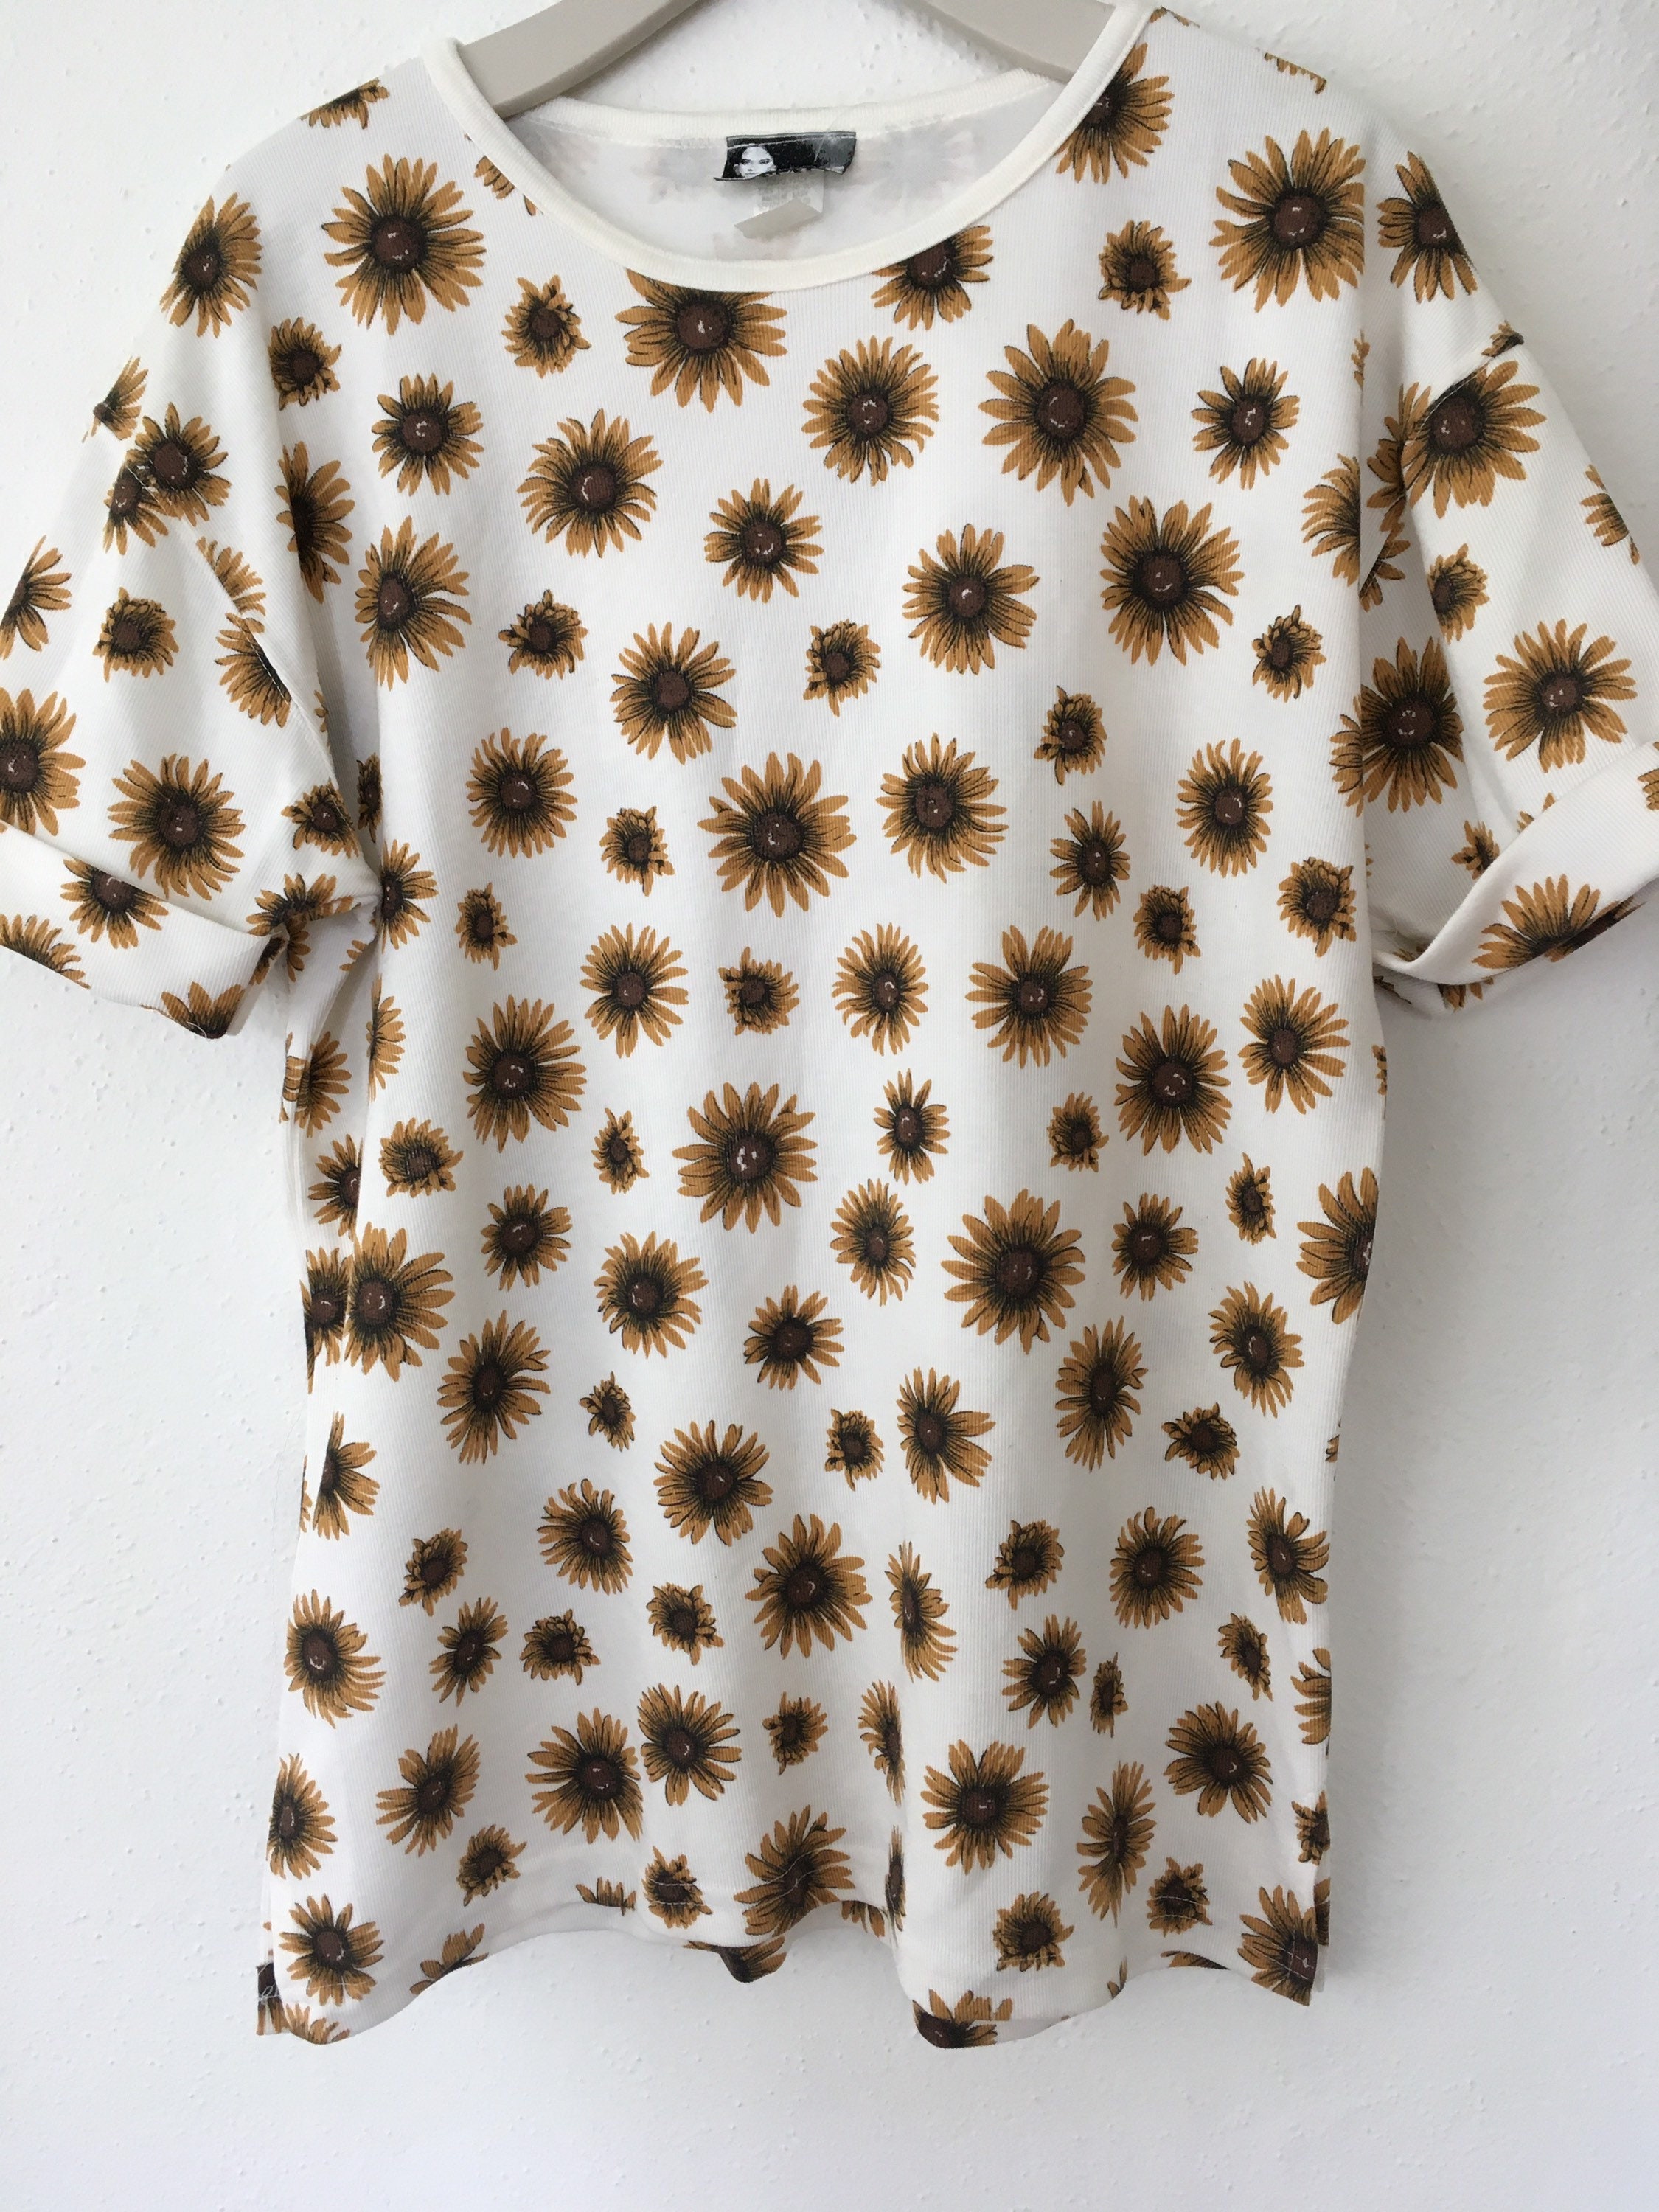 90s Sunflower Shirt - Etsy